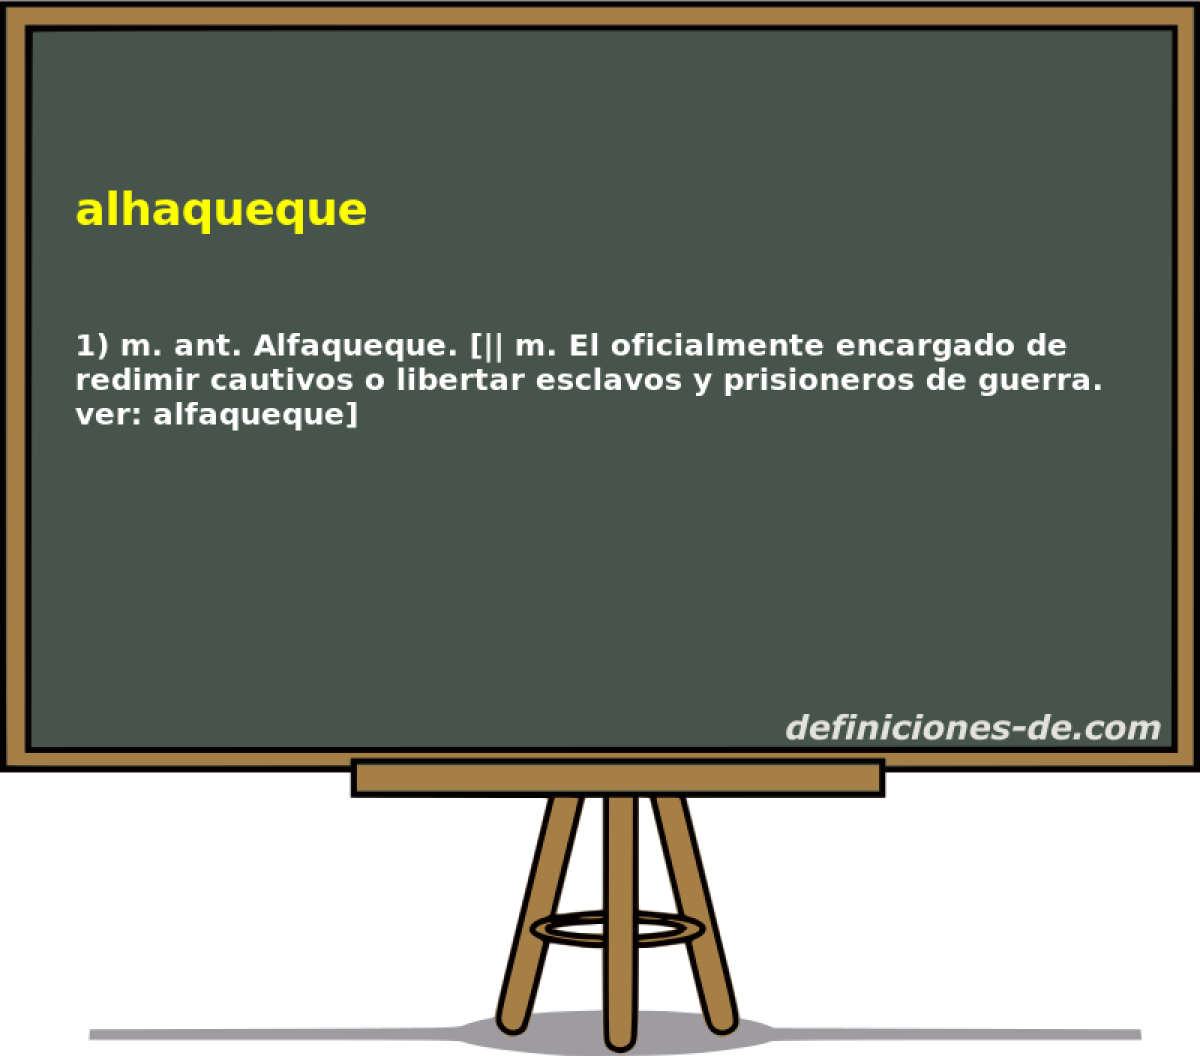 alhaqueque 